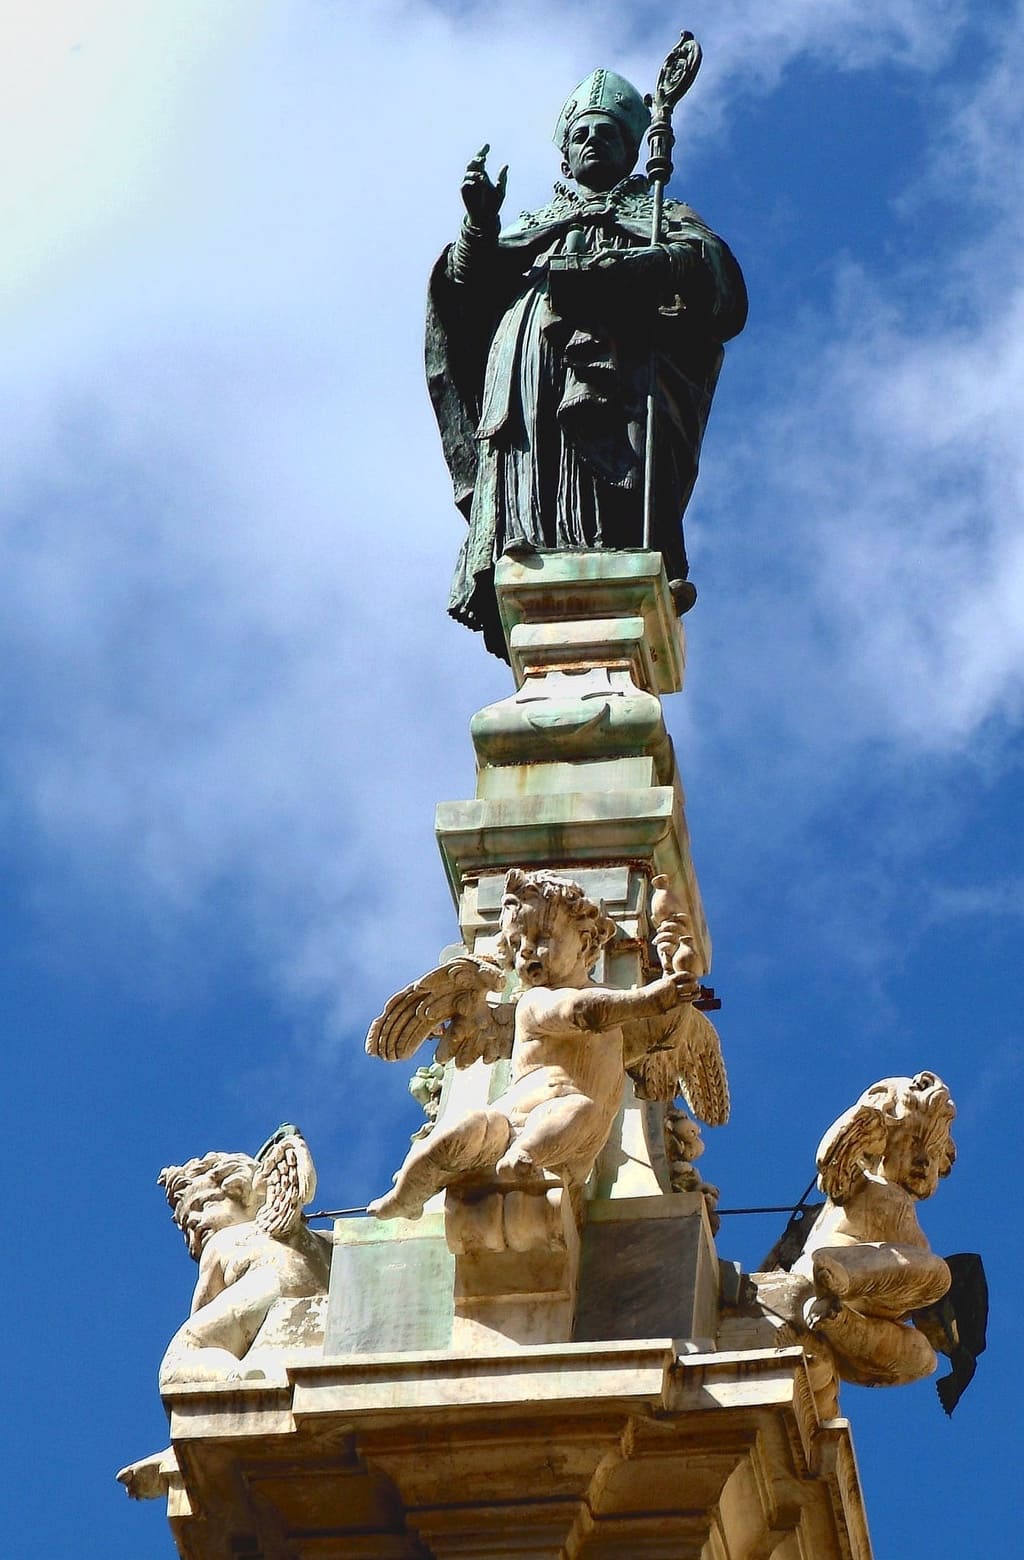 San Gennaro Obelisco in piazzza Riario Sforza